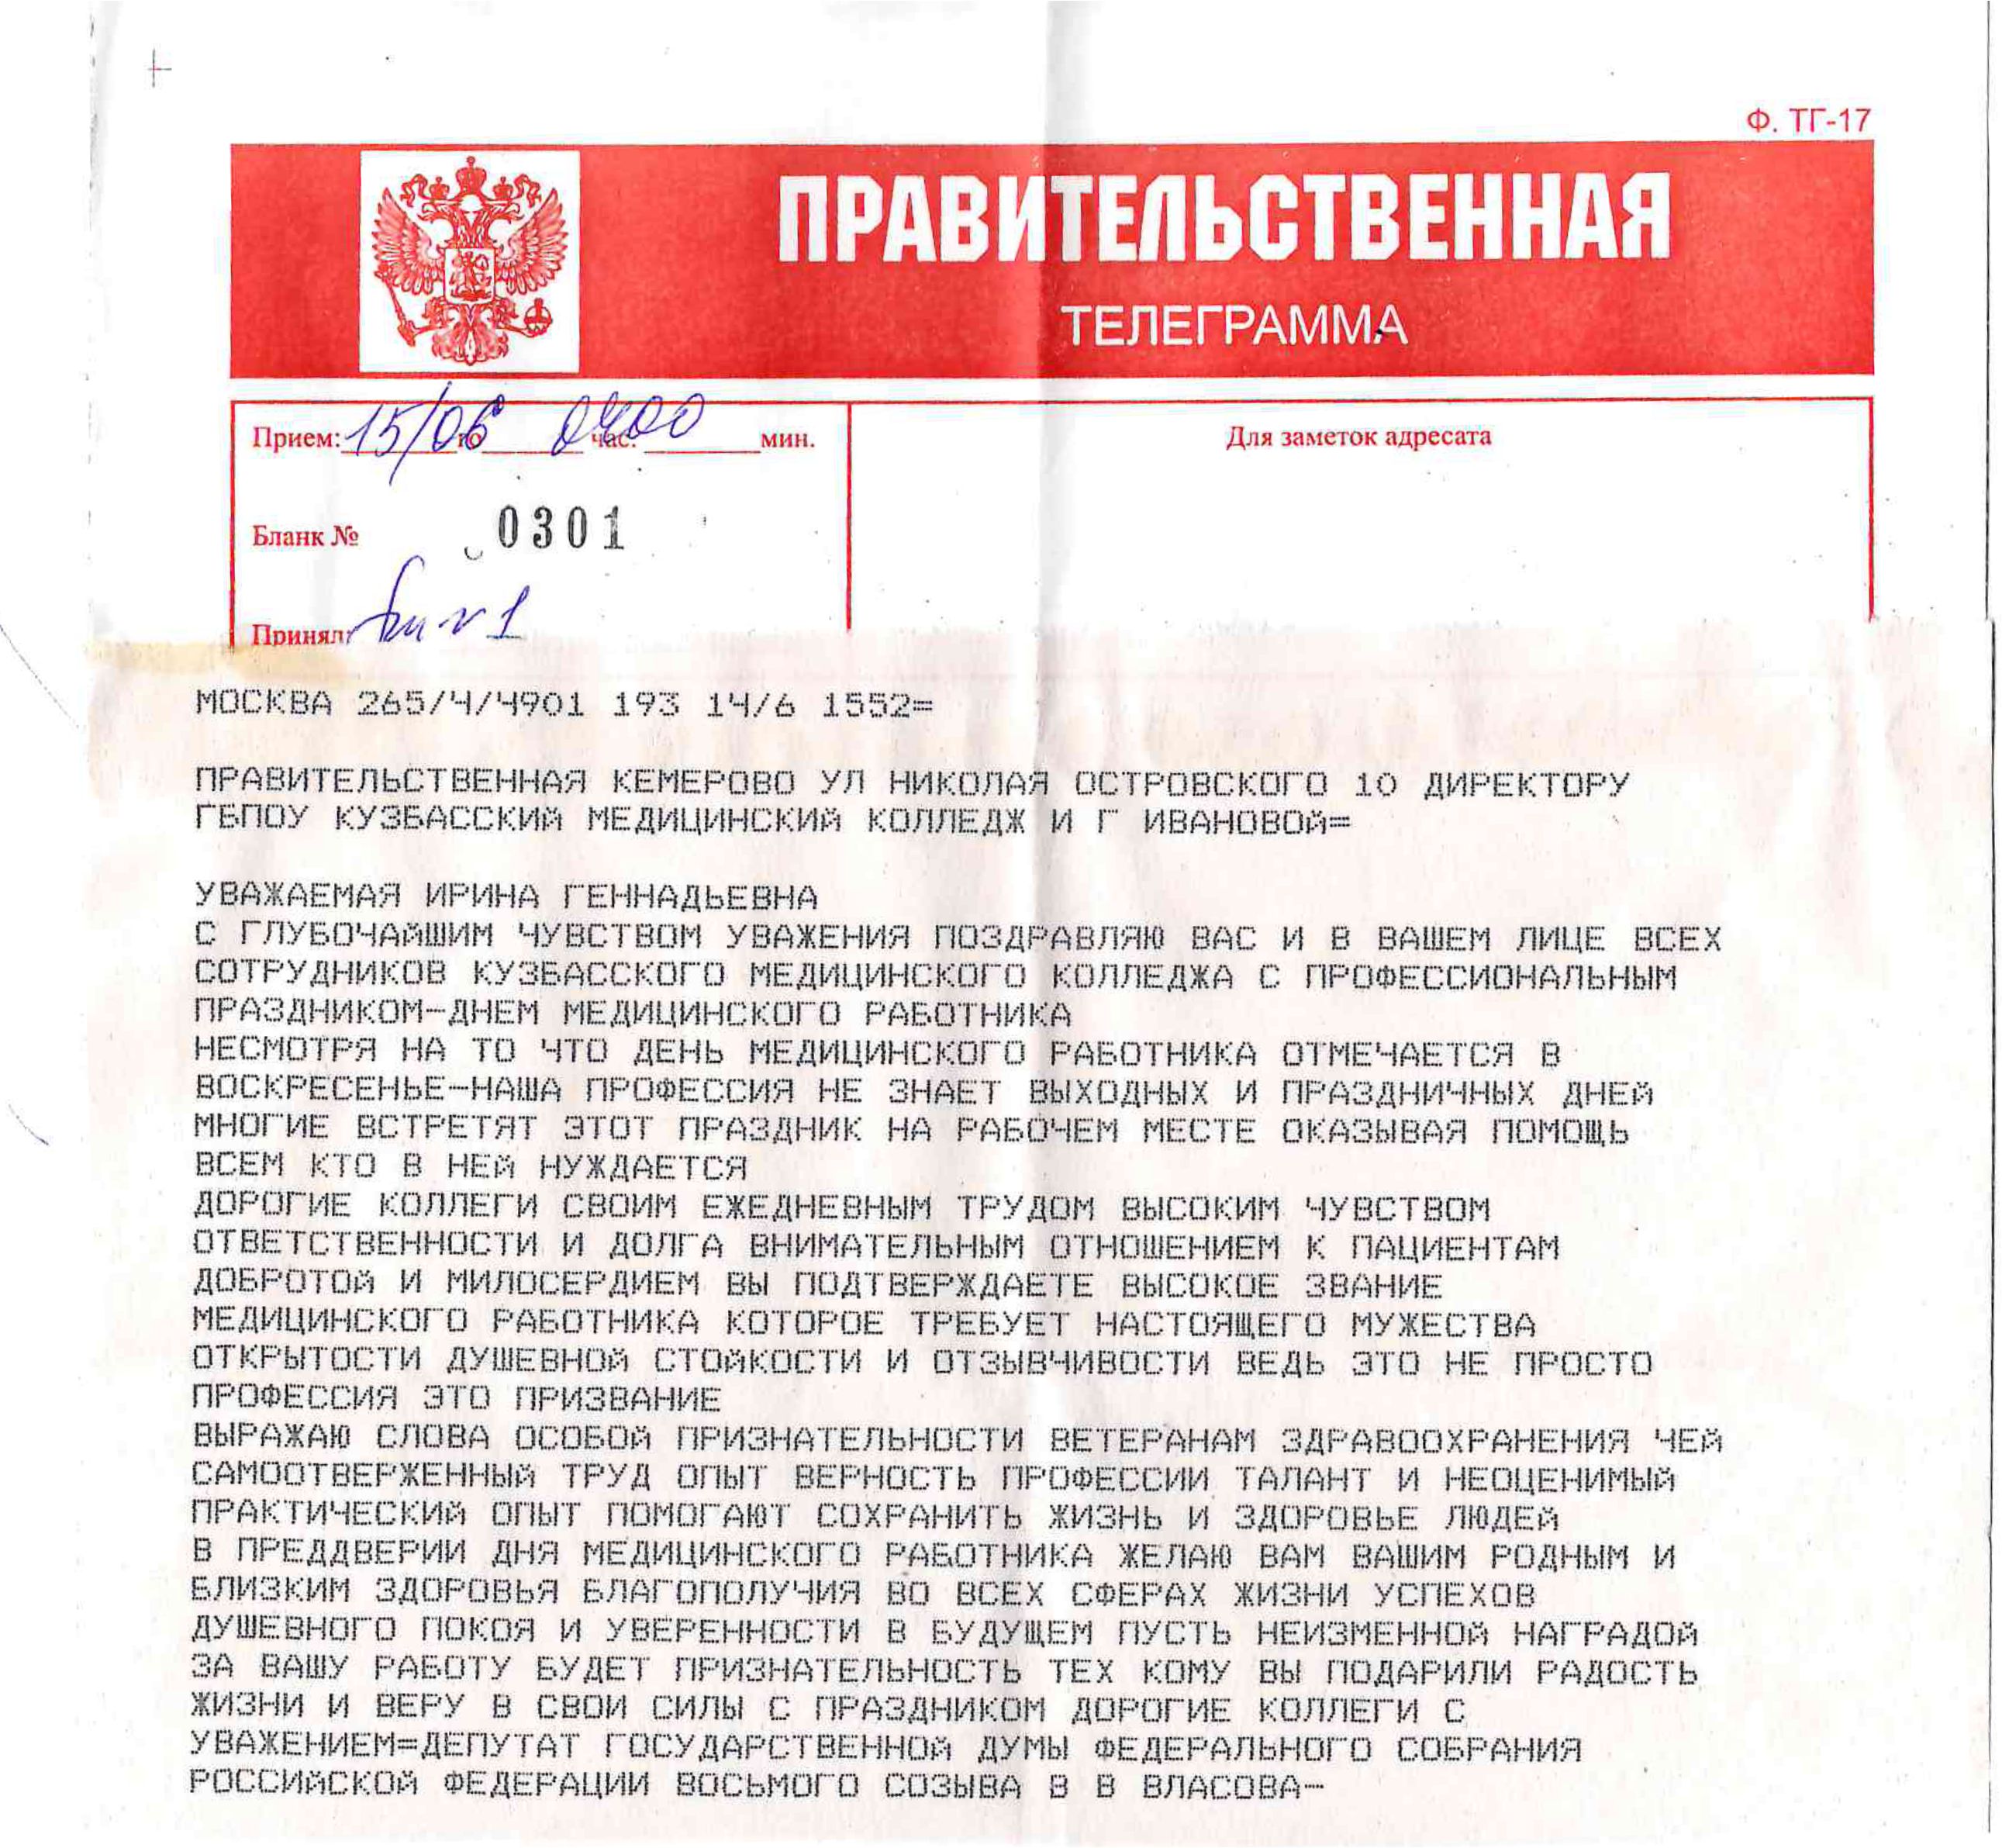 Русский язык как написать телеграмму фото 99